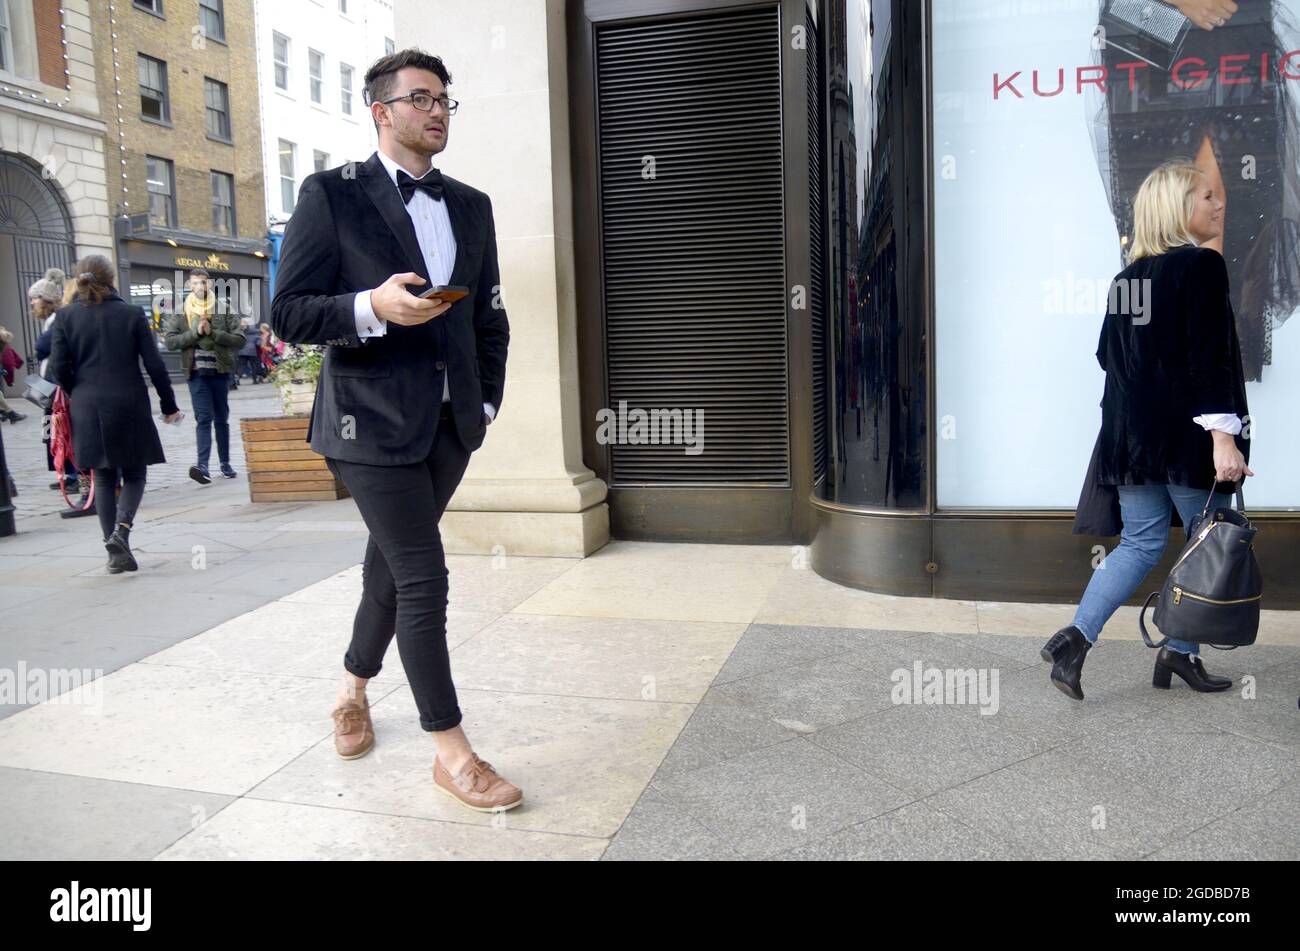 Londres, Angleterre, Royaume-Uni. Homme en cravate noire mais pas de chaussettes, Covent Garden Banque D'Images